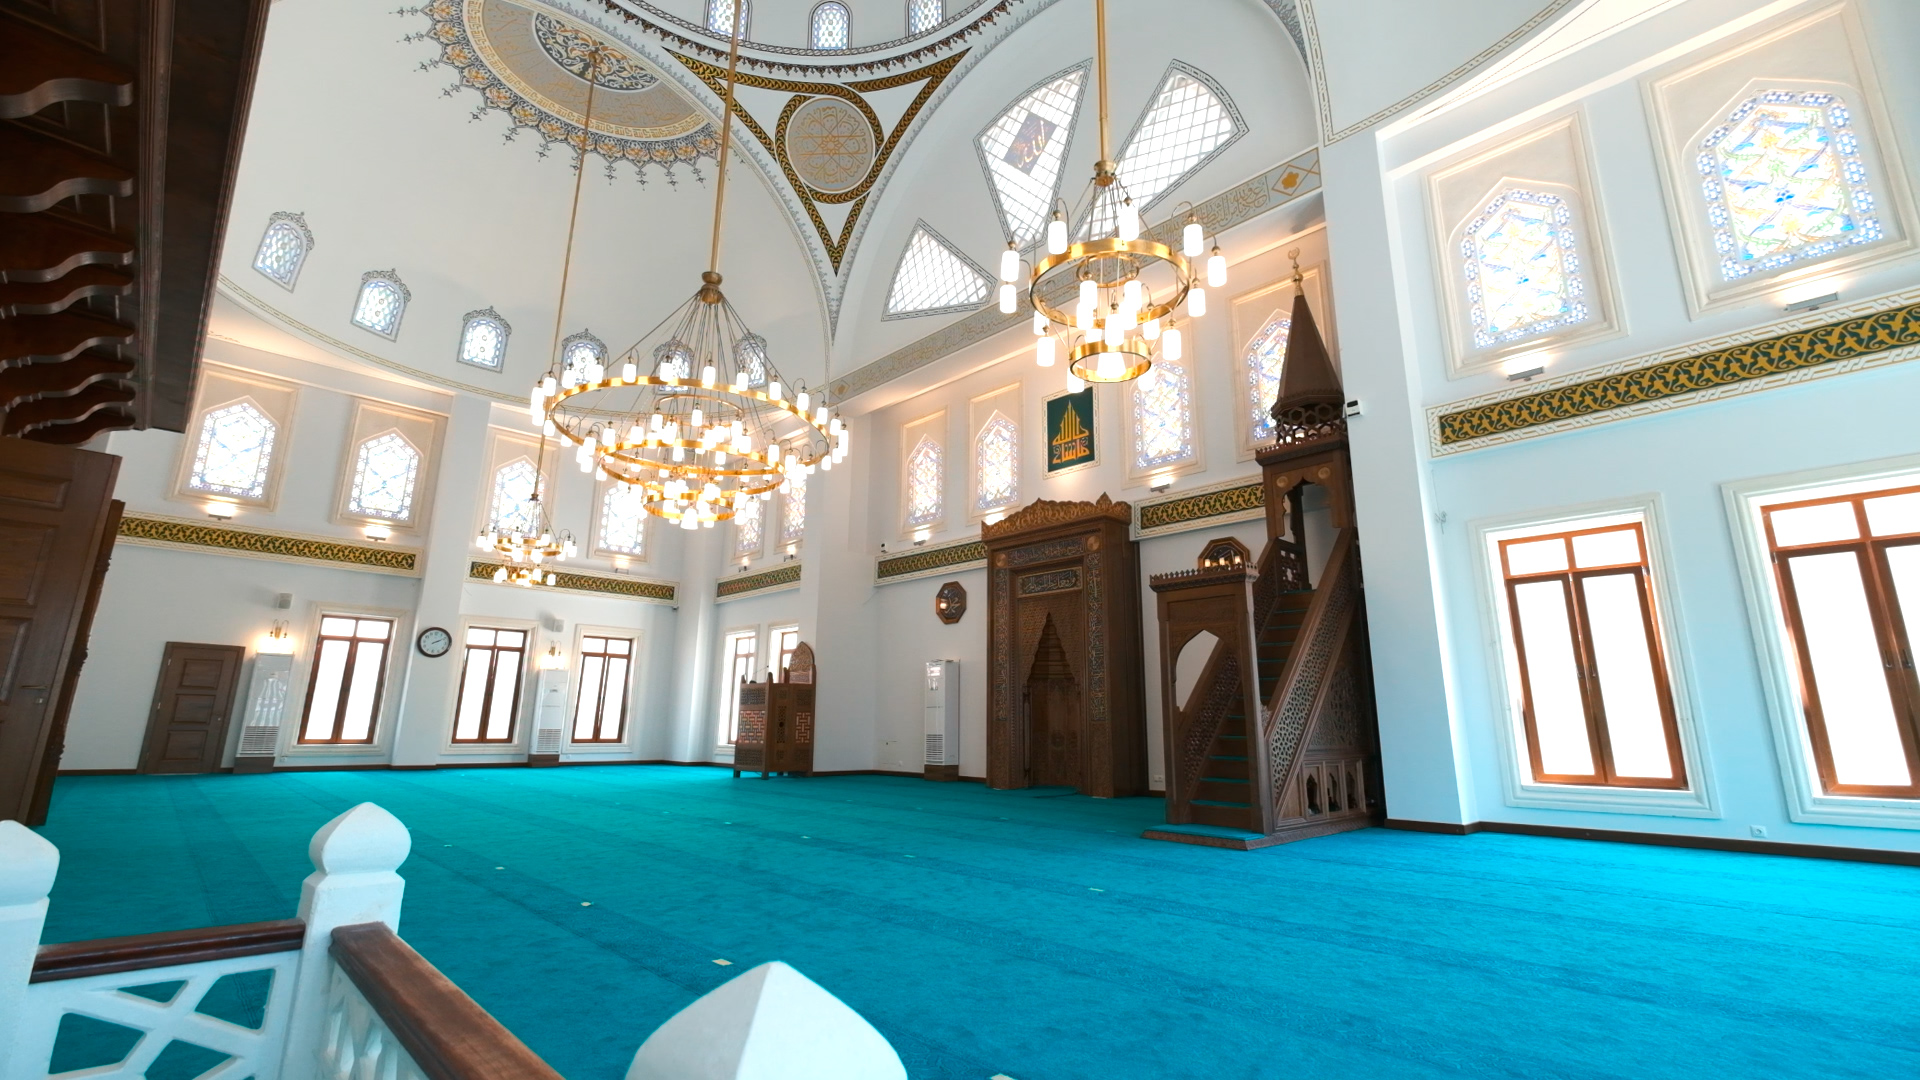 Şehriban Hatun Camii içi fotoğrafı.jpg